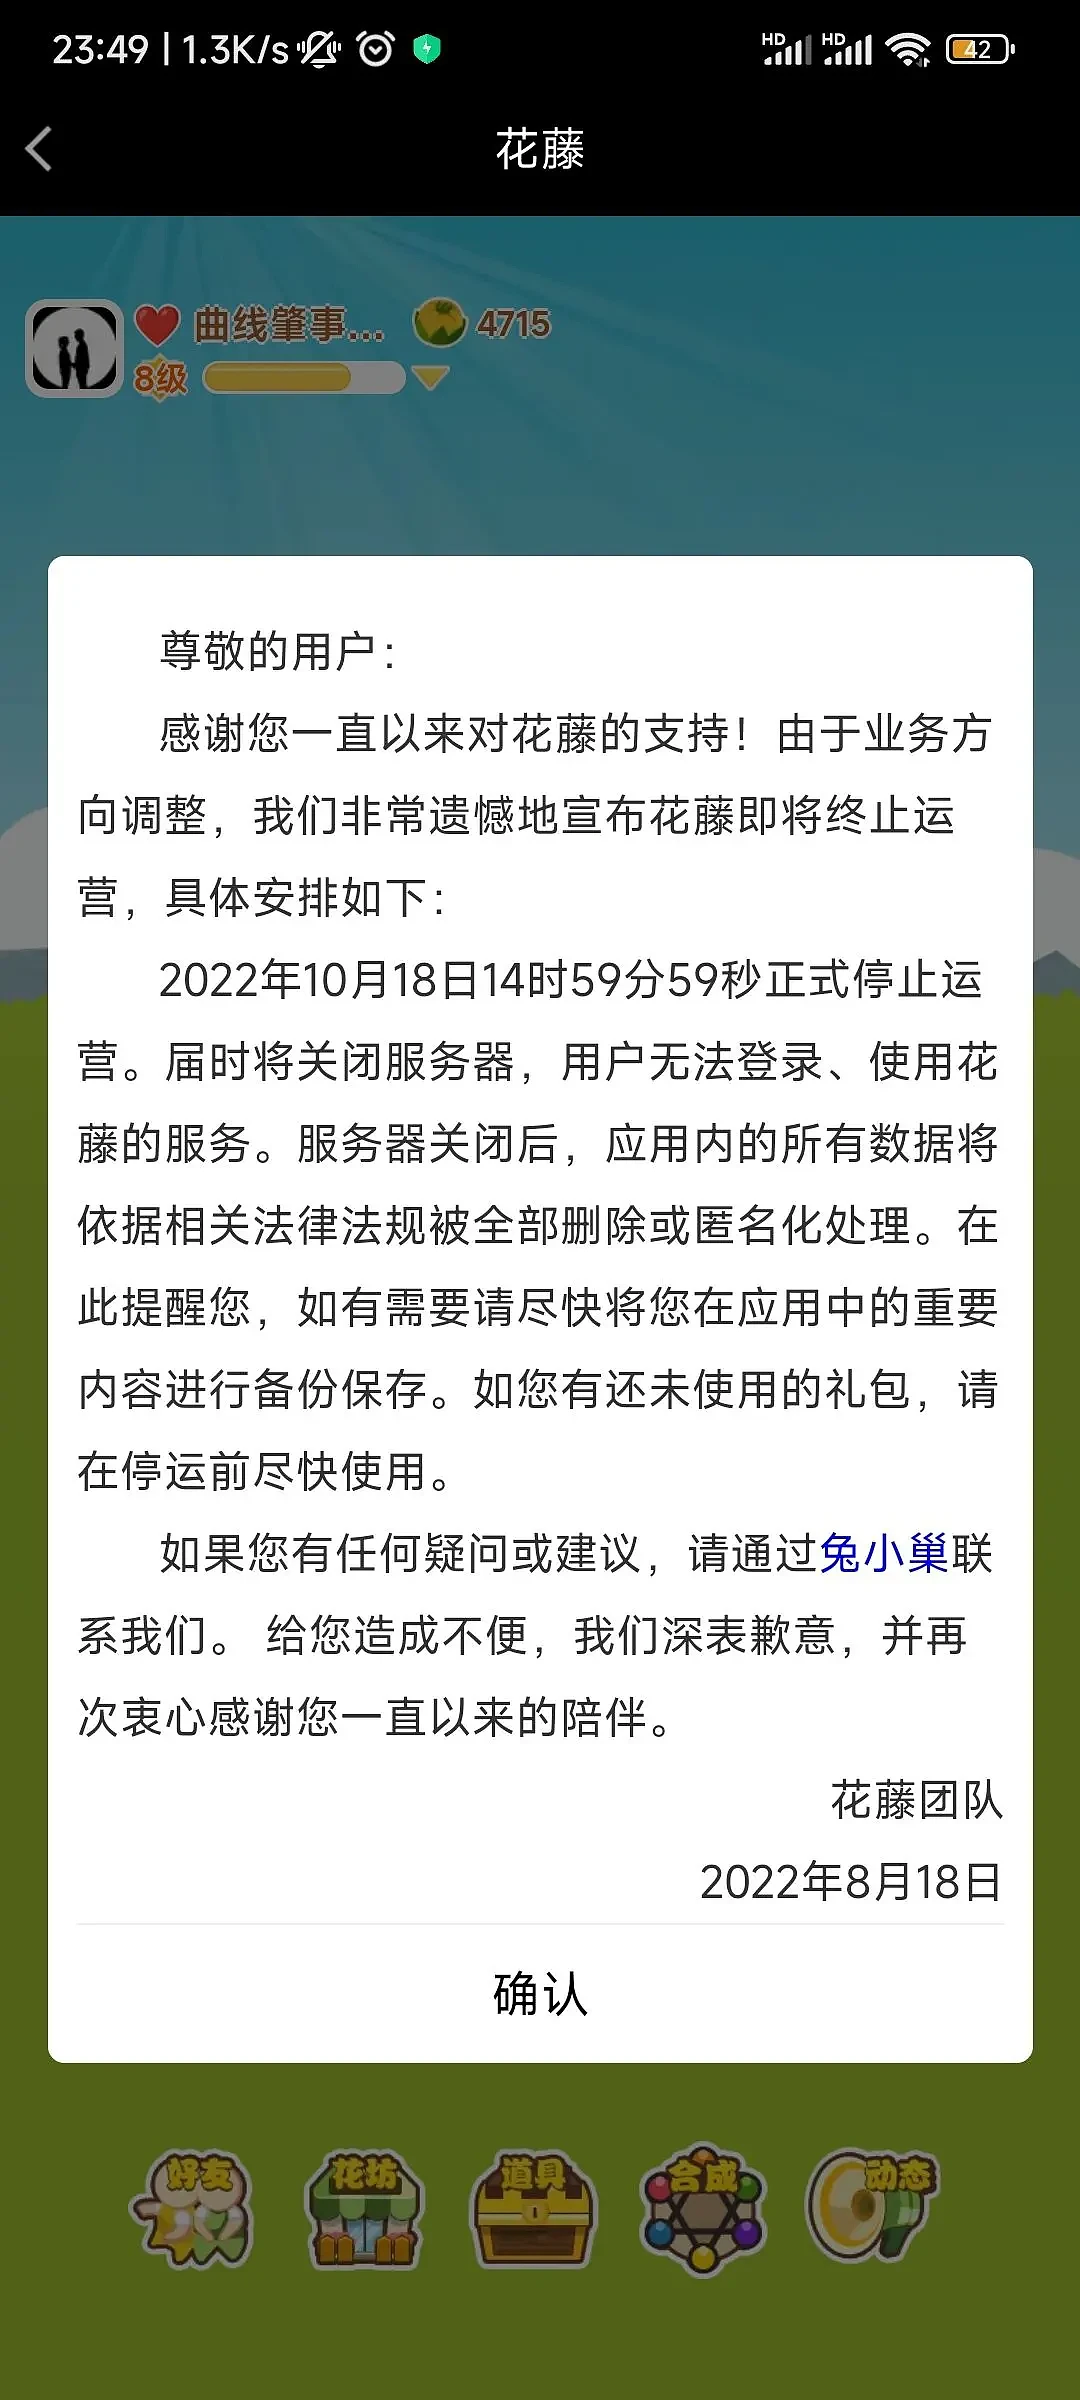 腾讯《QQ空间花藤》宣布将于2022年8月18日终止运营 - 1